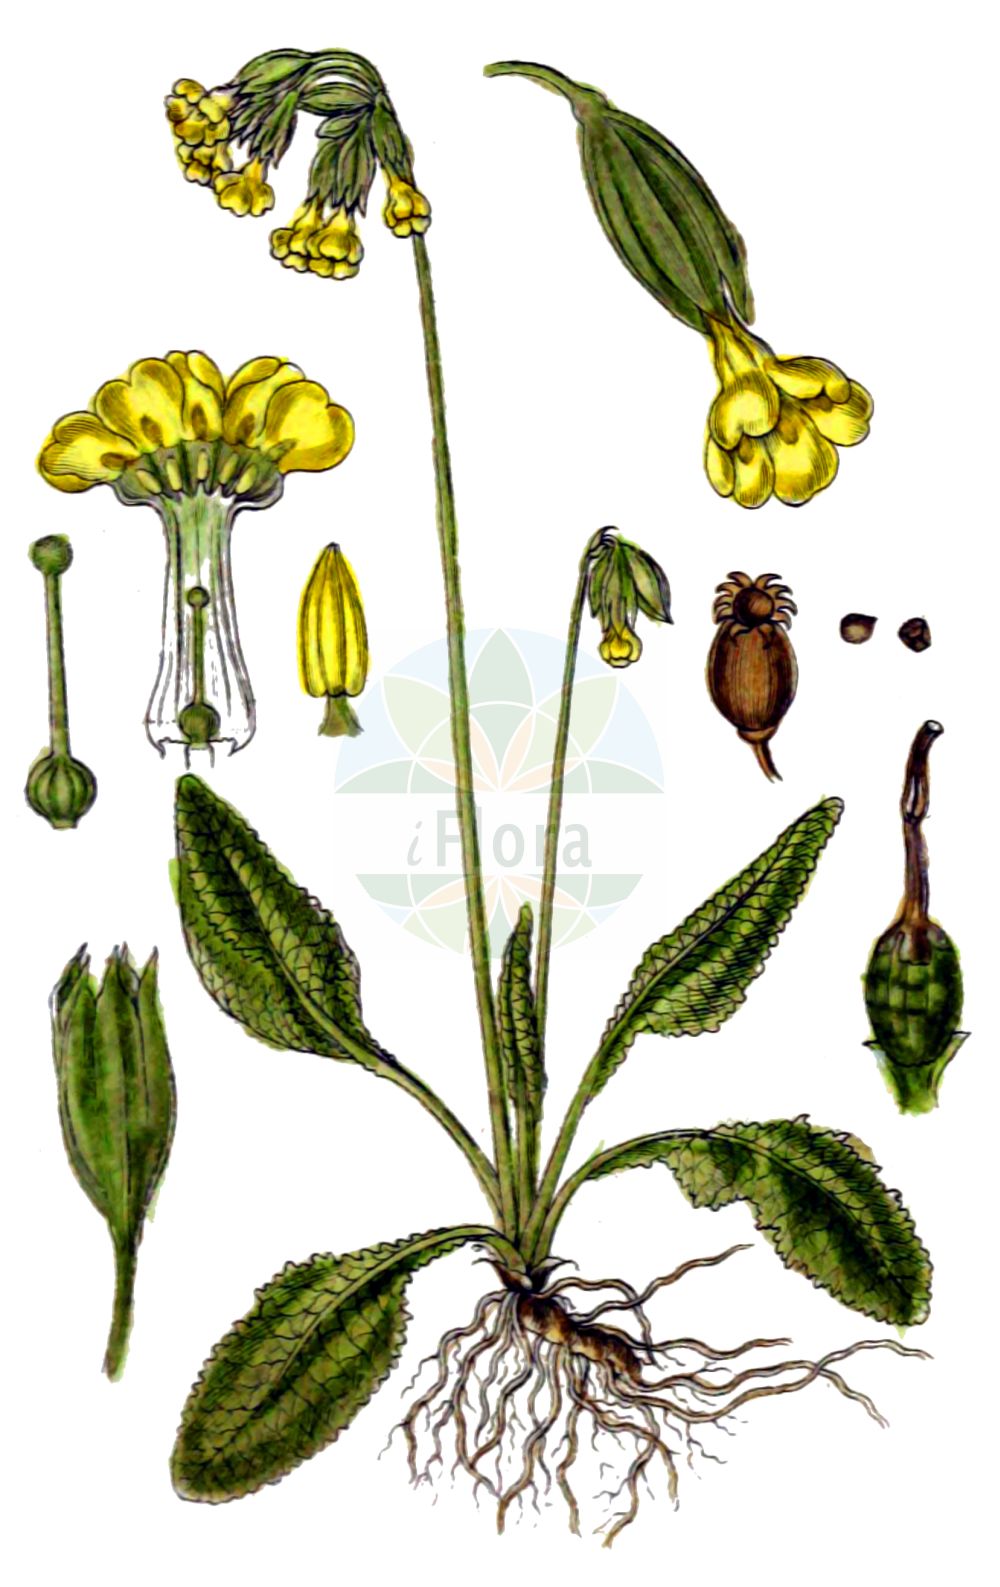 Historische Abbildung von Primula veris (Echte Schlüsselblume - Cowslip). Das Bild zeigt Blatt, Bluete, Frucht und Same. ---- Historical Drawing of Primula veris (Echte Schlüsselblume - Cowslip). The image is showing leaf, flower, fruit and seed.(Primula veris,Echte Schlüsselblume,Cowslip,Primula officinalis,Primula veris,Primula veris var. officinalis,Echte Schluesselblume,Duftende Schluesselblume,Echte Primel,Erd-Primel,Fruehlings-Schluesselblume,Gewoehnliche Wiesen-Schluesselblume,Himmelschluessel,Wiesen-Primel,Wiesen-Schluesselblume,Cowslip,Cowslip Primrose,Primula,Schlüsselblume,Primrose,Primulaceae,Schlüsselblumengewächse,Primrose family,Blatt,Bluete,Frucht,Same,leaf,flower,fruit,seed,Sturm (1796f))